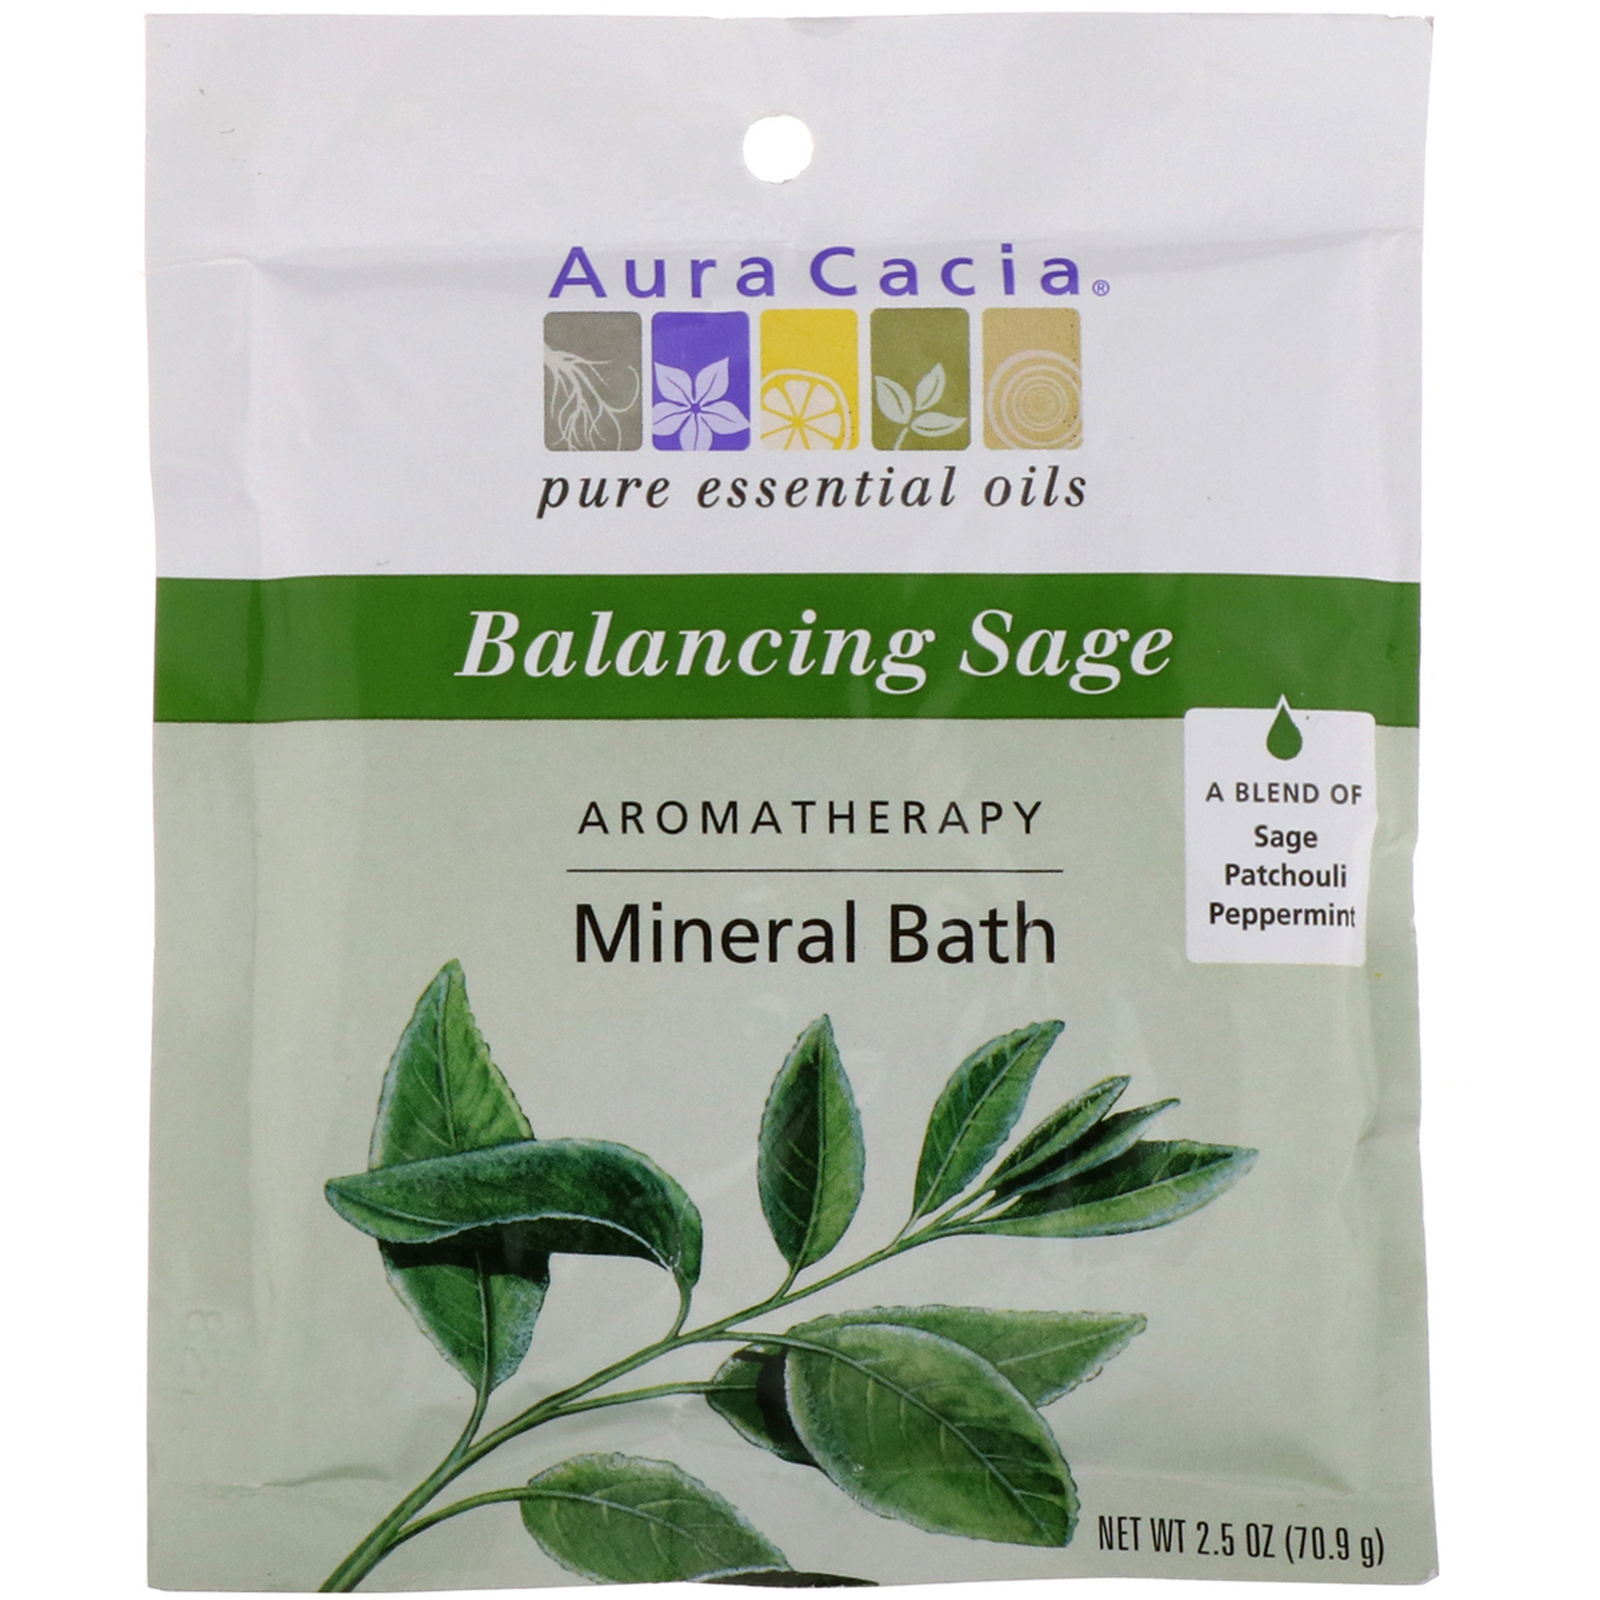 Превосходная ароматерапевтическая минеральная добавка для ванны с ароматом шалфея!